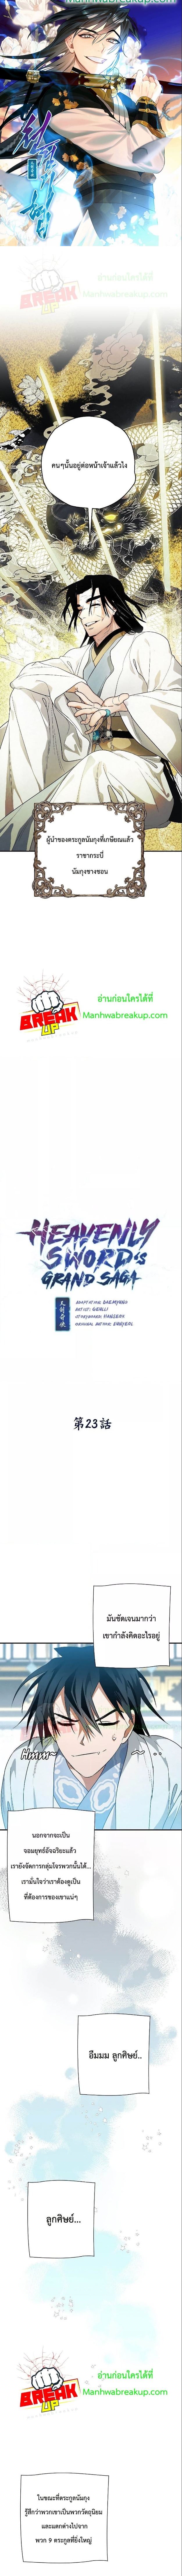 Heavenly Swordโ€s Grand Saga 23 (1)